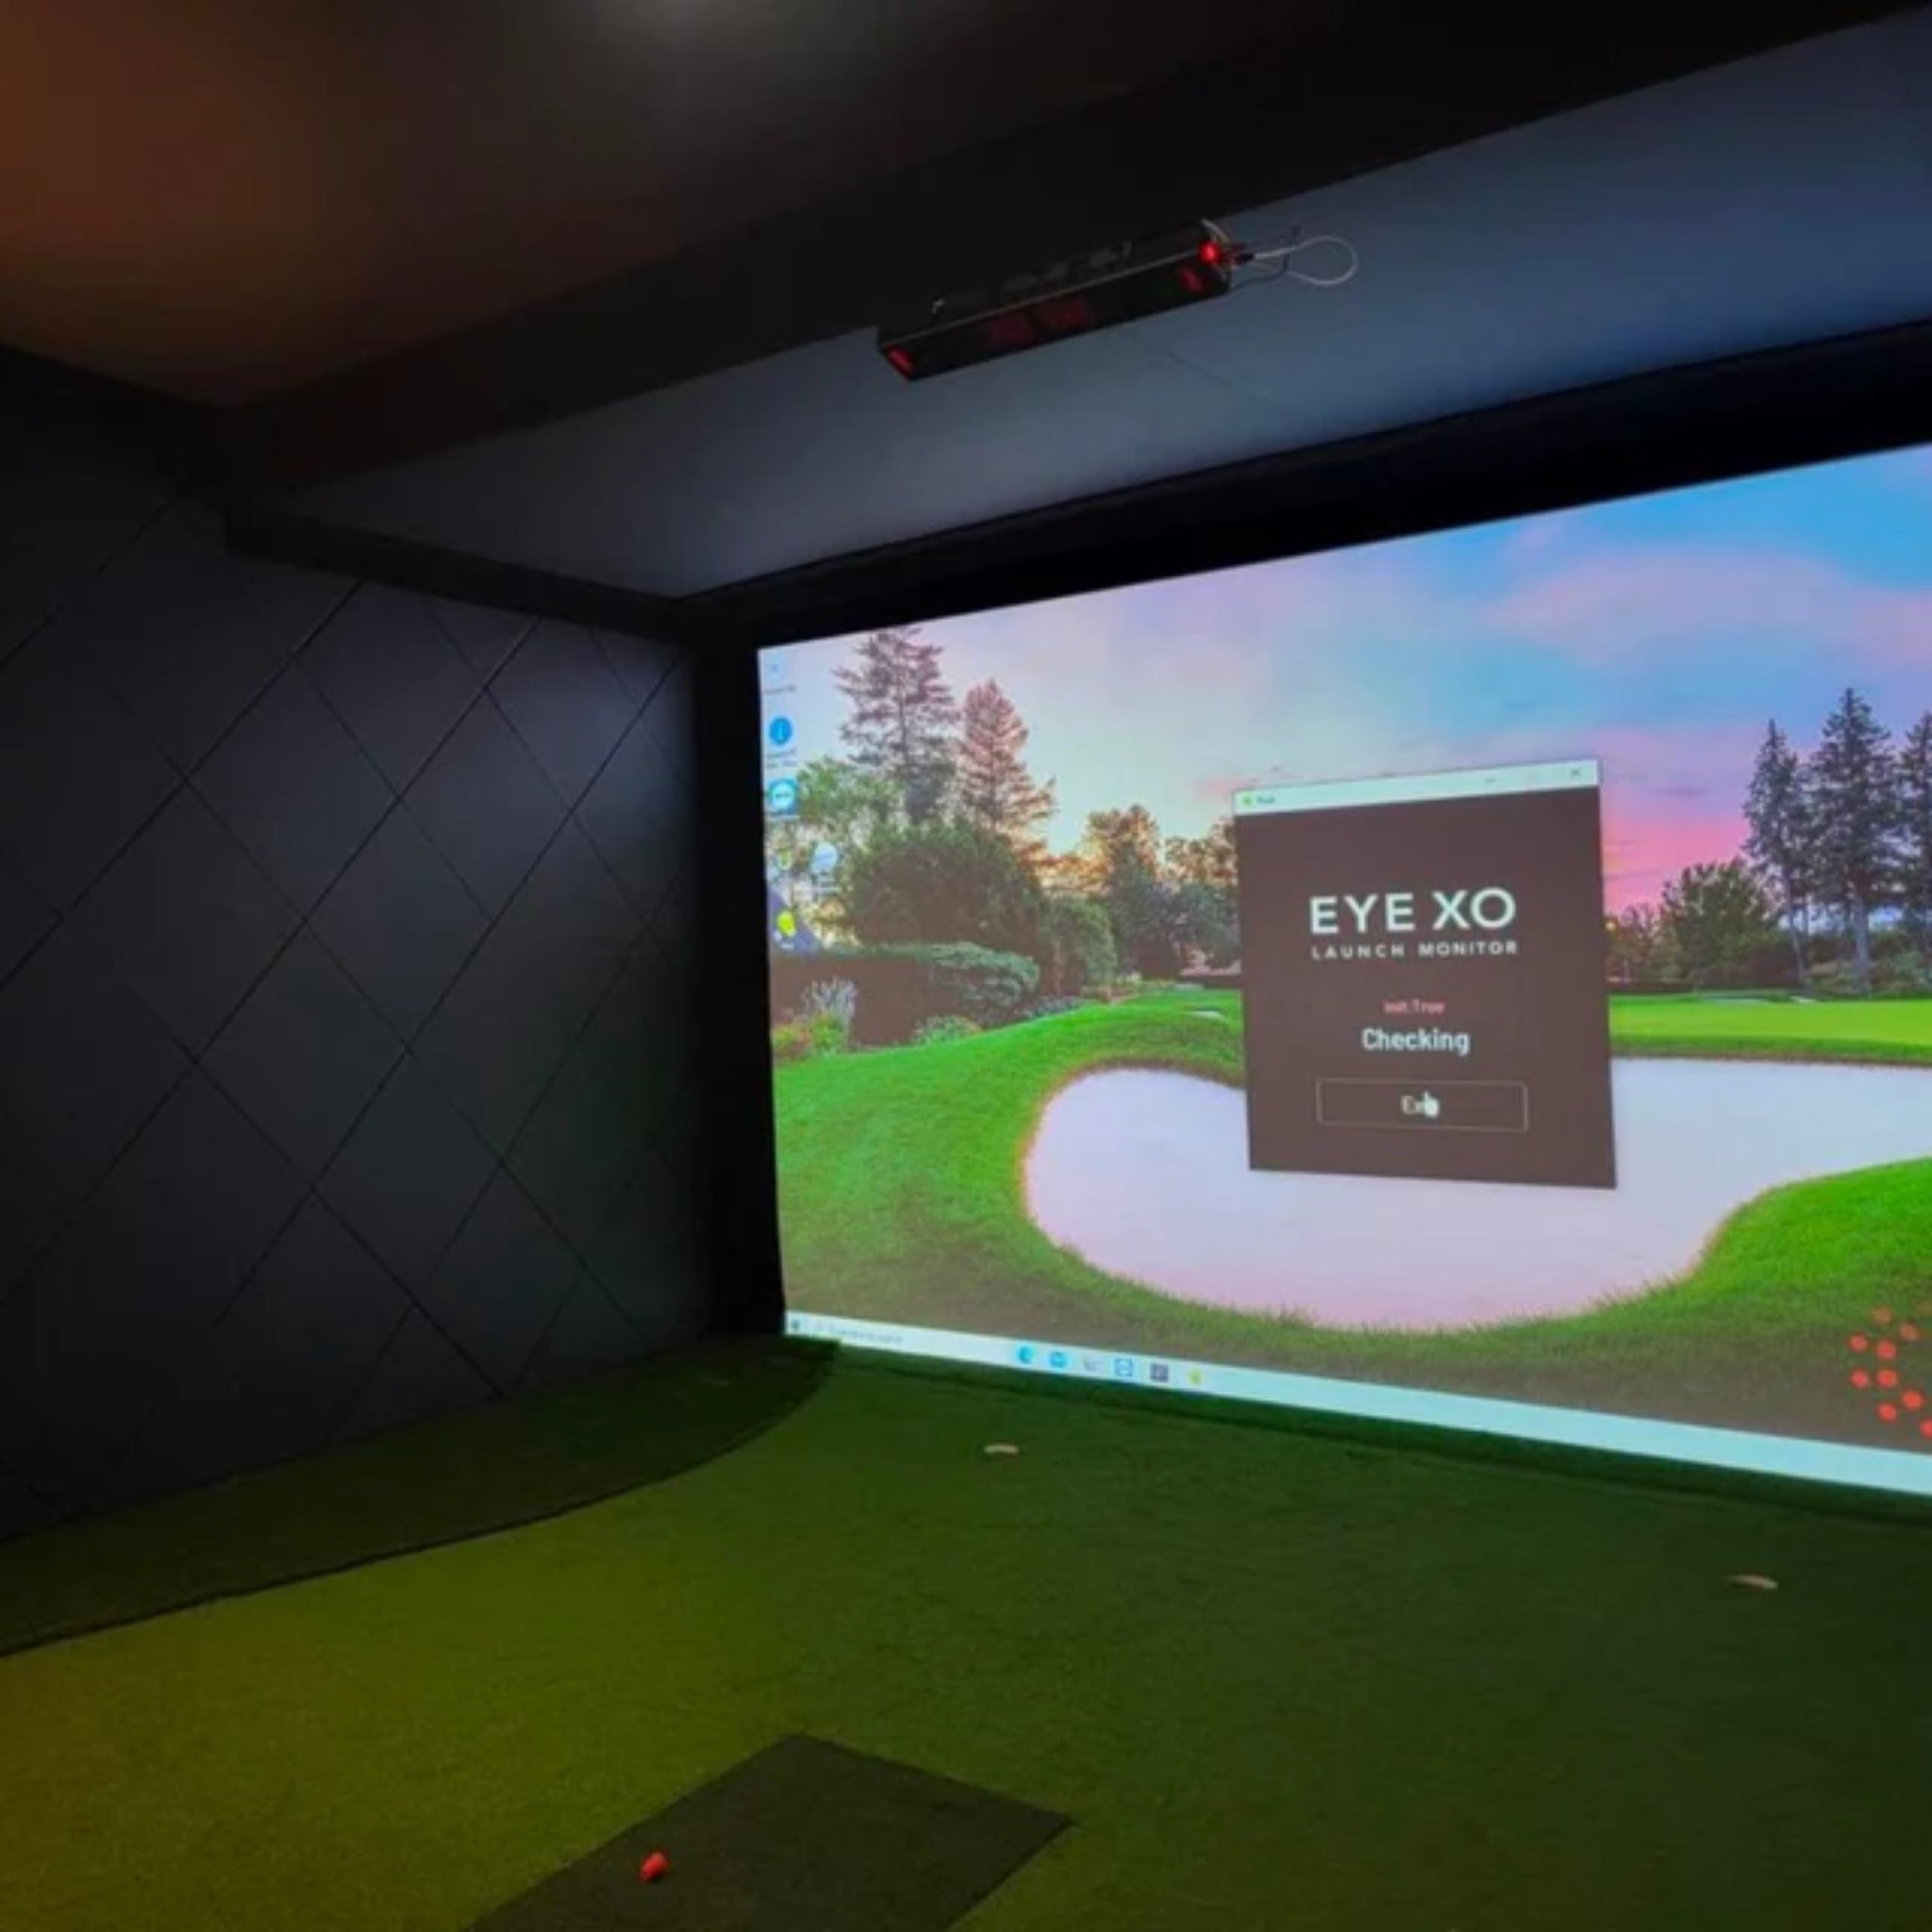 SIGPRO Golf Simulator Wall Padding